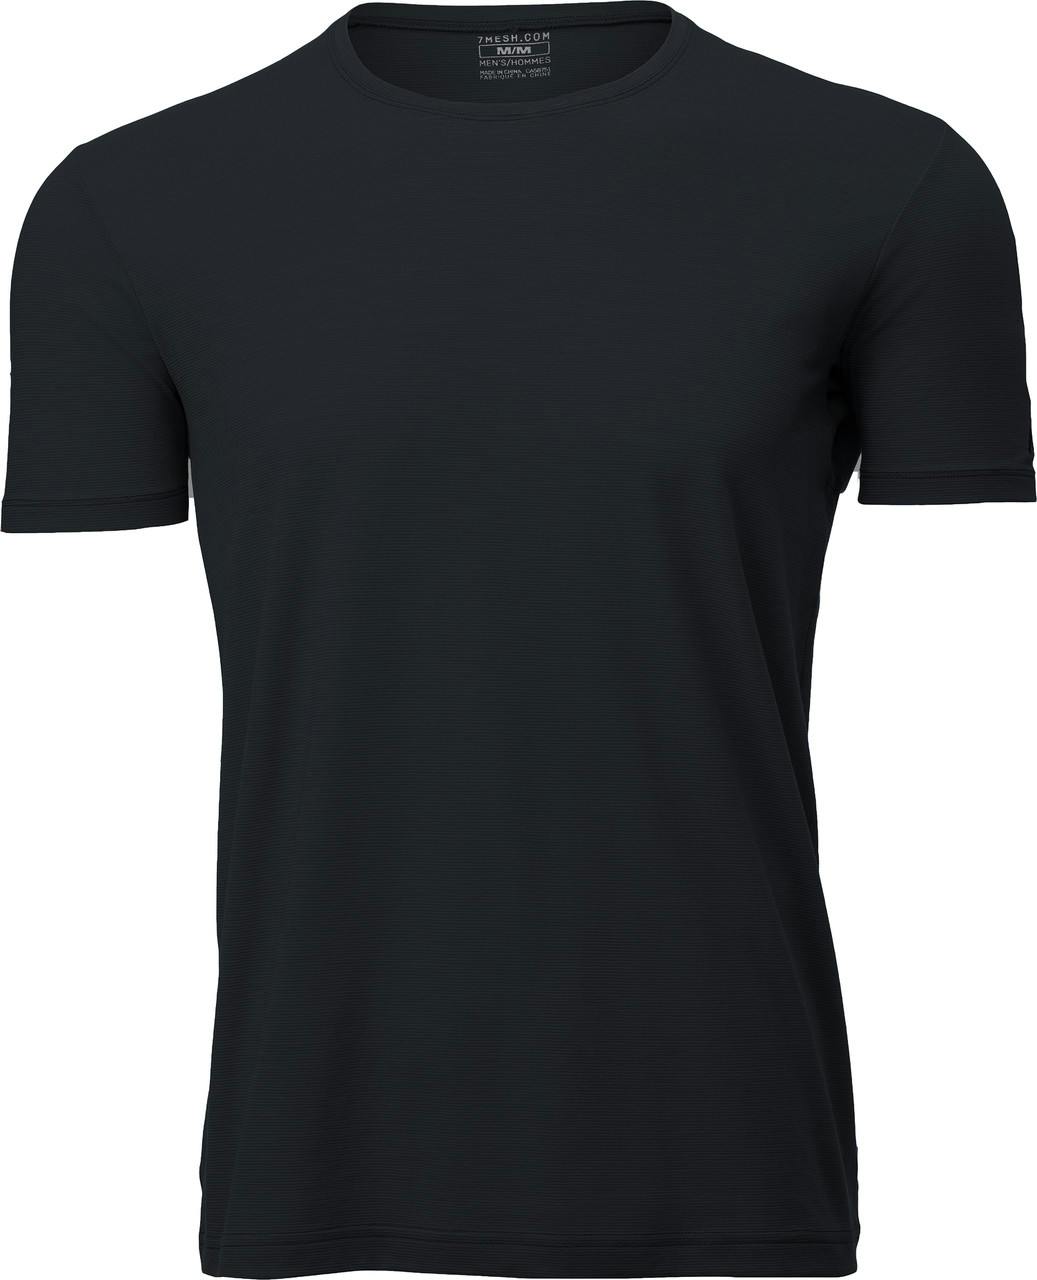 Desperado Short Sleeve Shirt Black